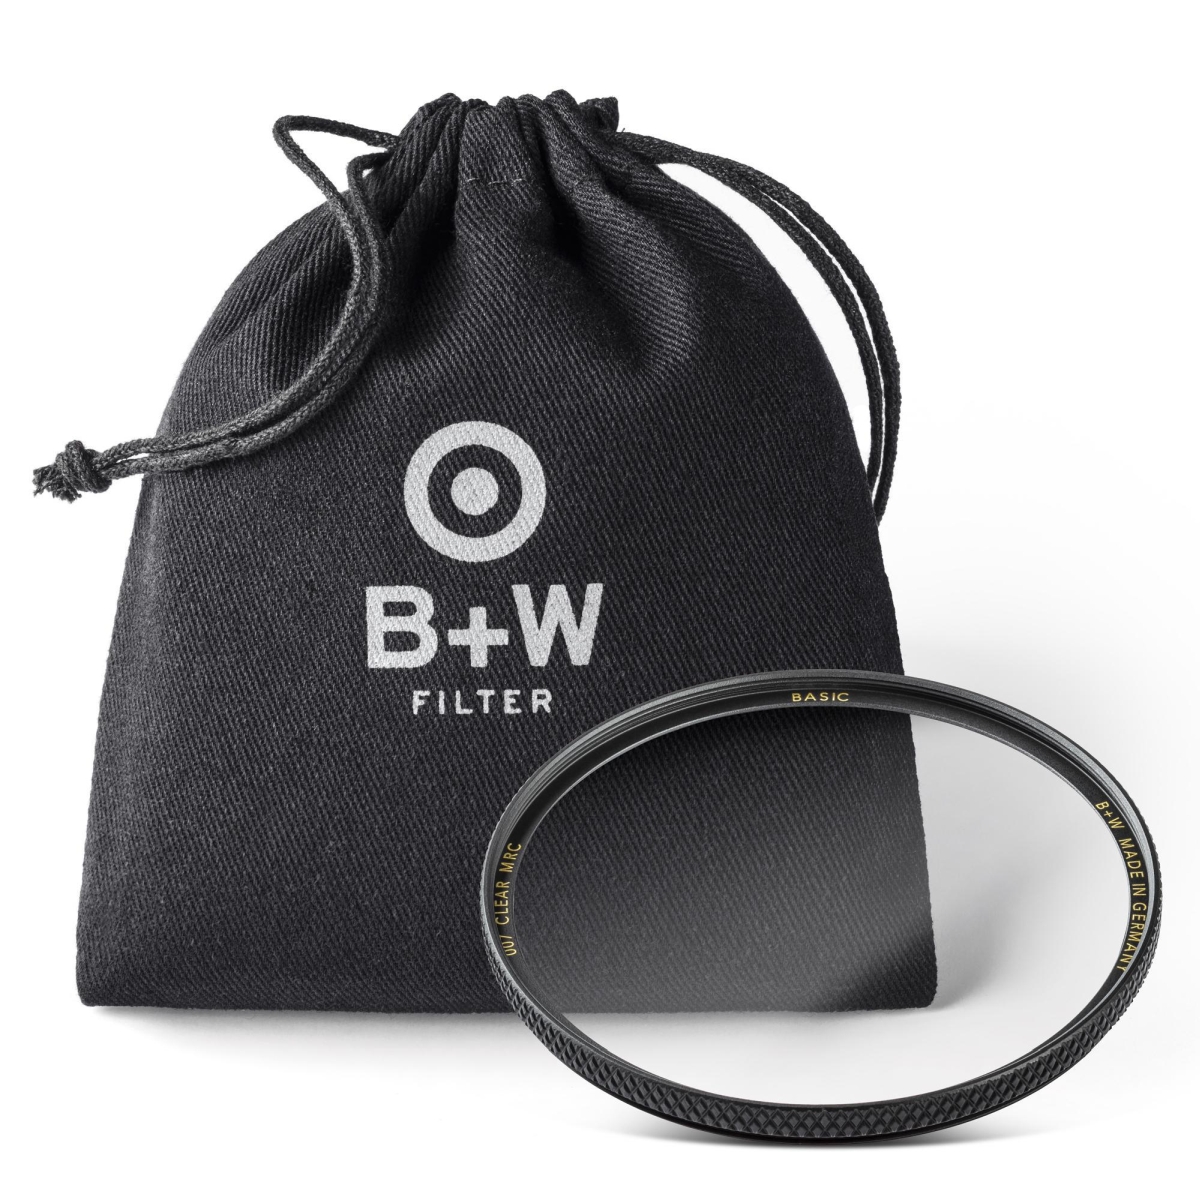 B+W Clear Filter 62 mm MRC Basic